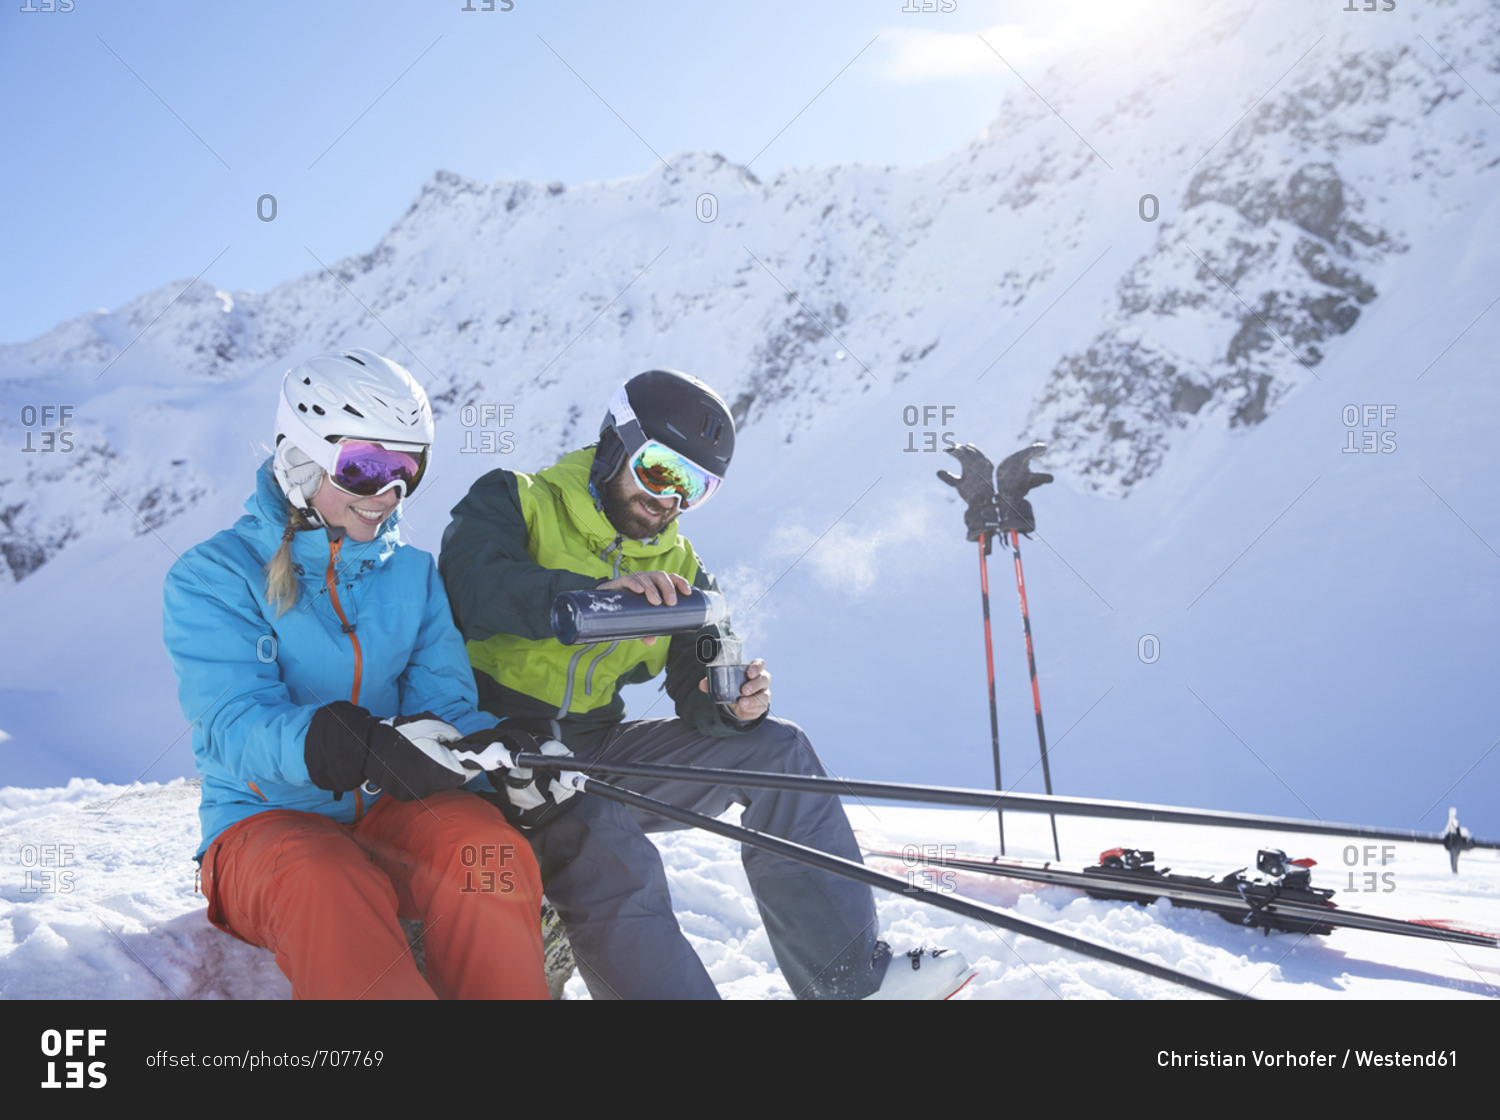 Austria- Tyrol- Kuehtai- two skiers in winter landscape having a break